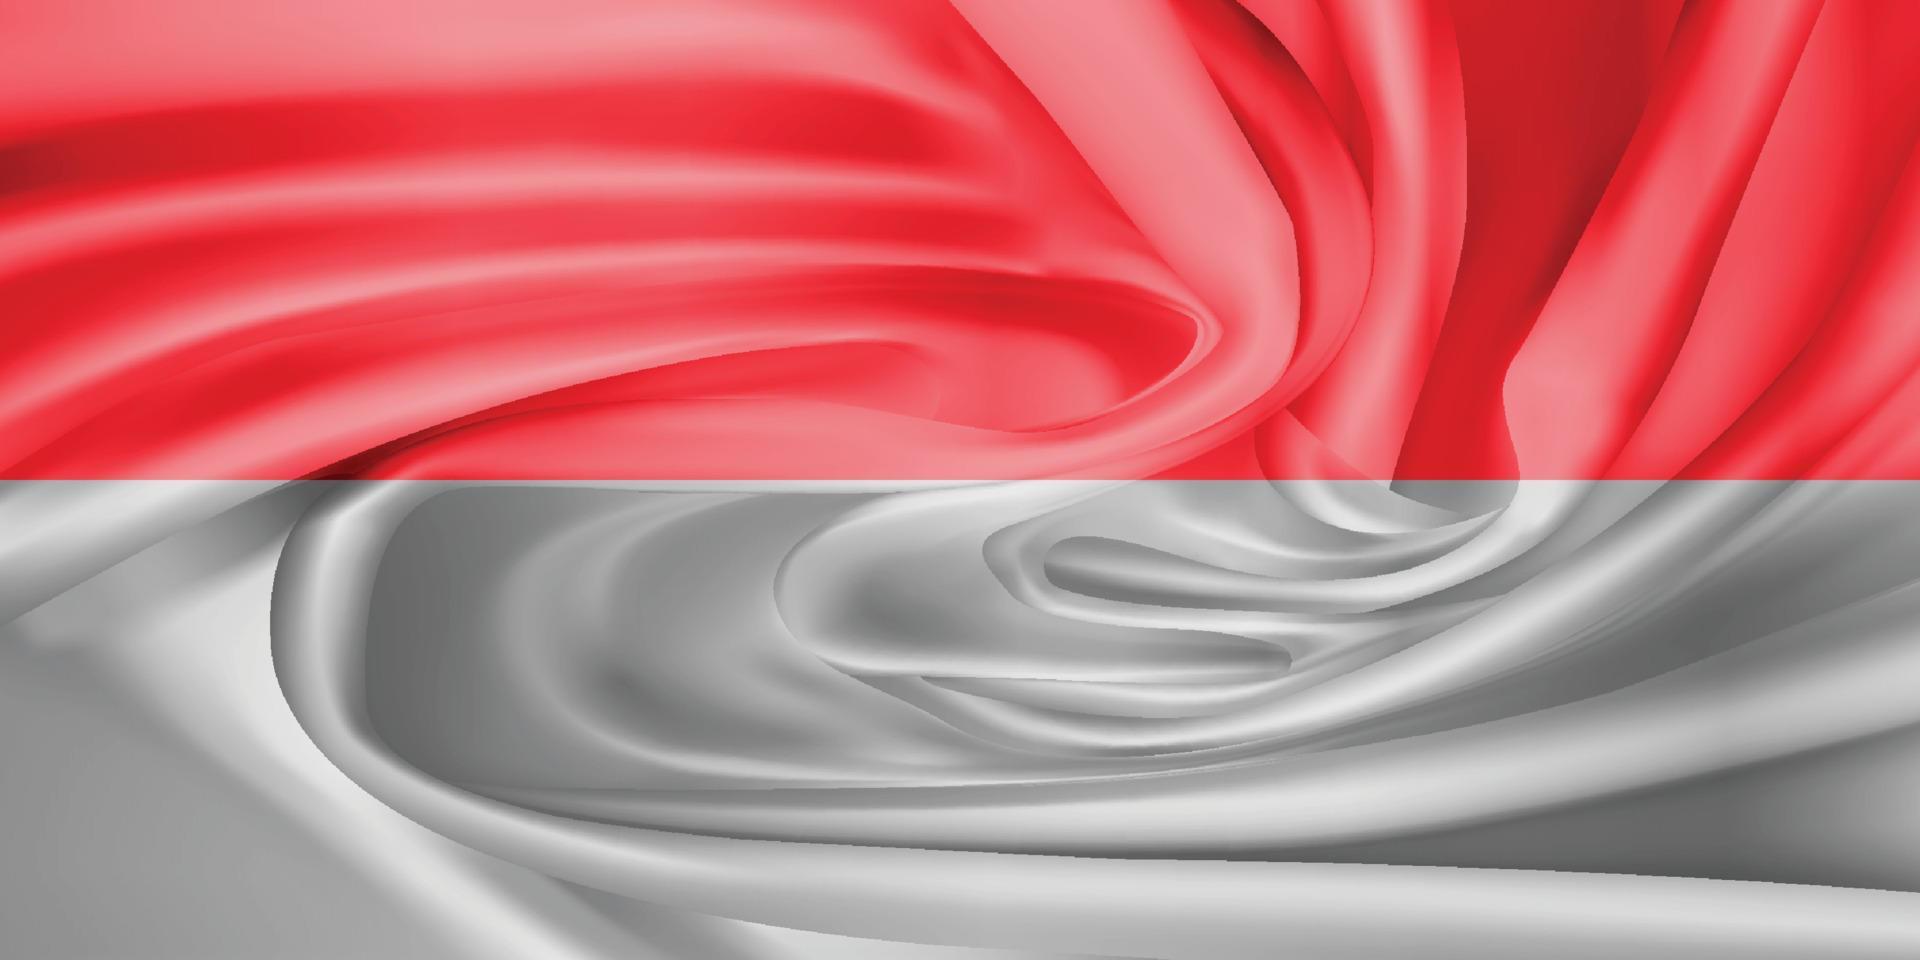 den nationella flaggan. symbolen för staten på vågigt bomullstyg. realistisk vektor illustration.flagga bakgrund med tyg textur